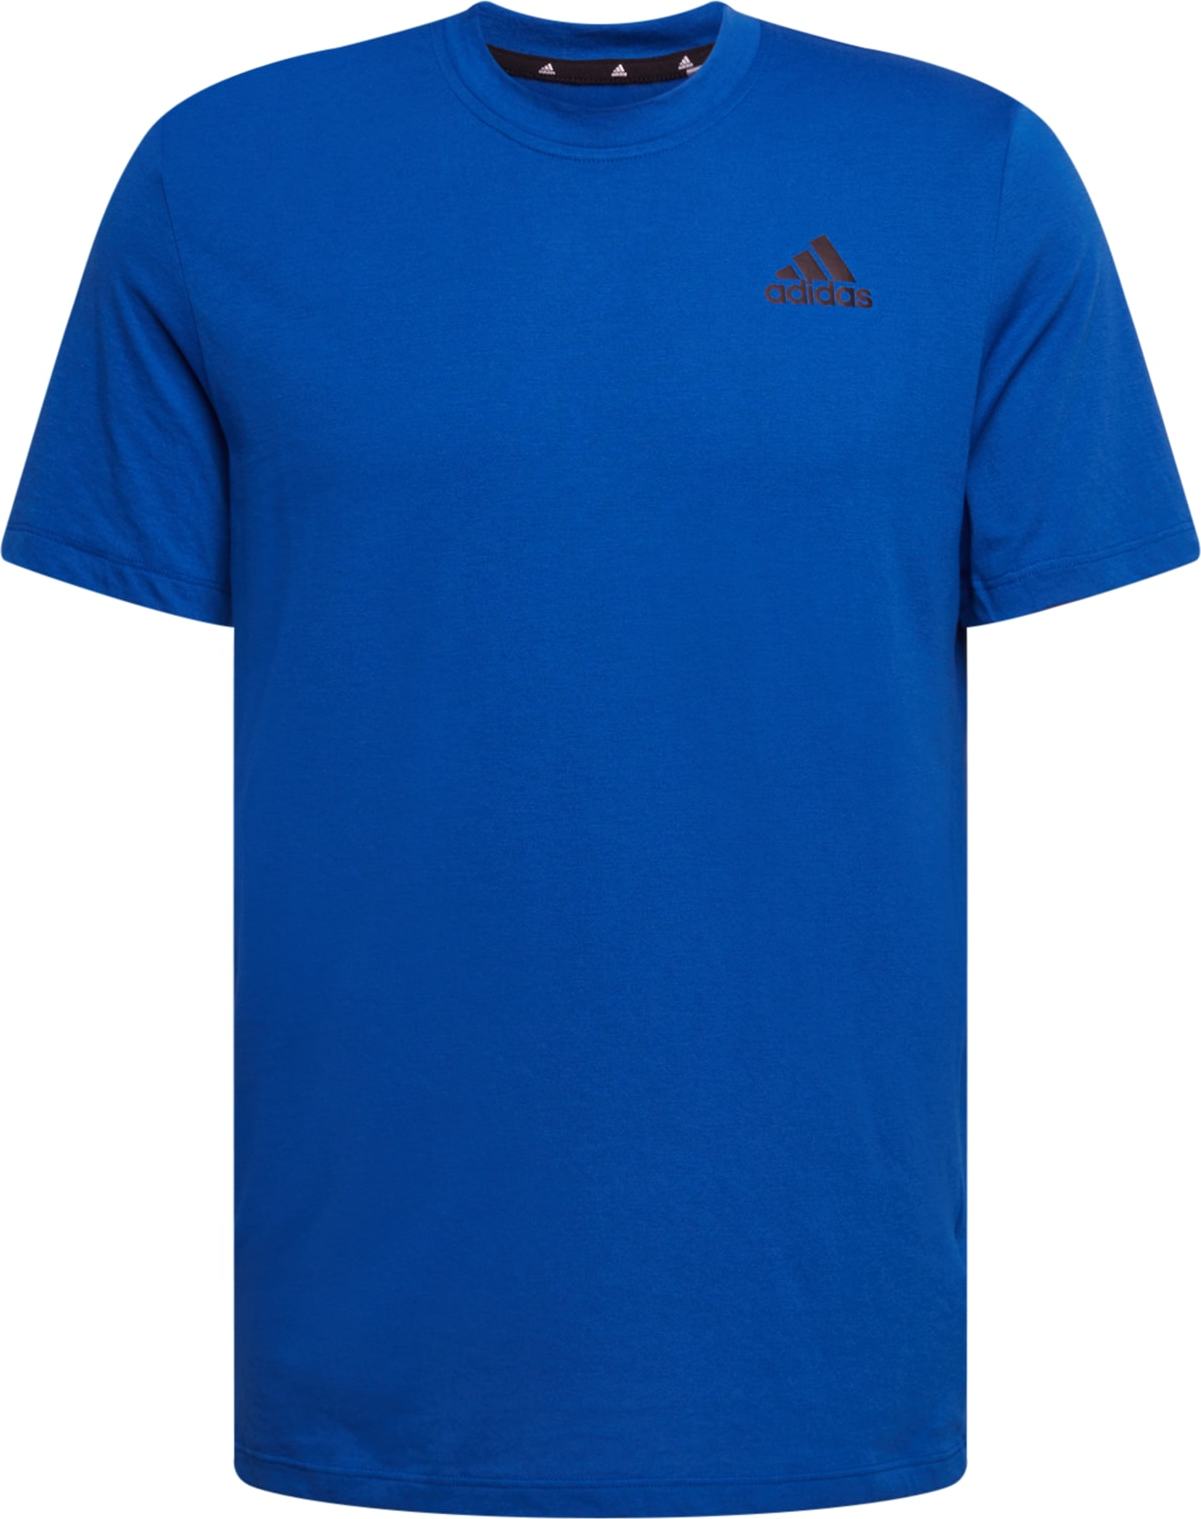 ADIDAS SPORTSWEAR Funkční tričko královská modrá / černá